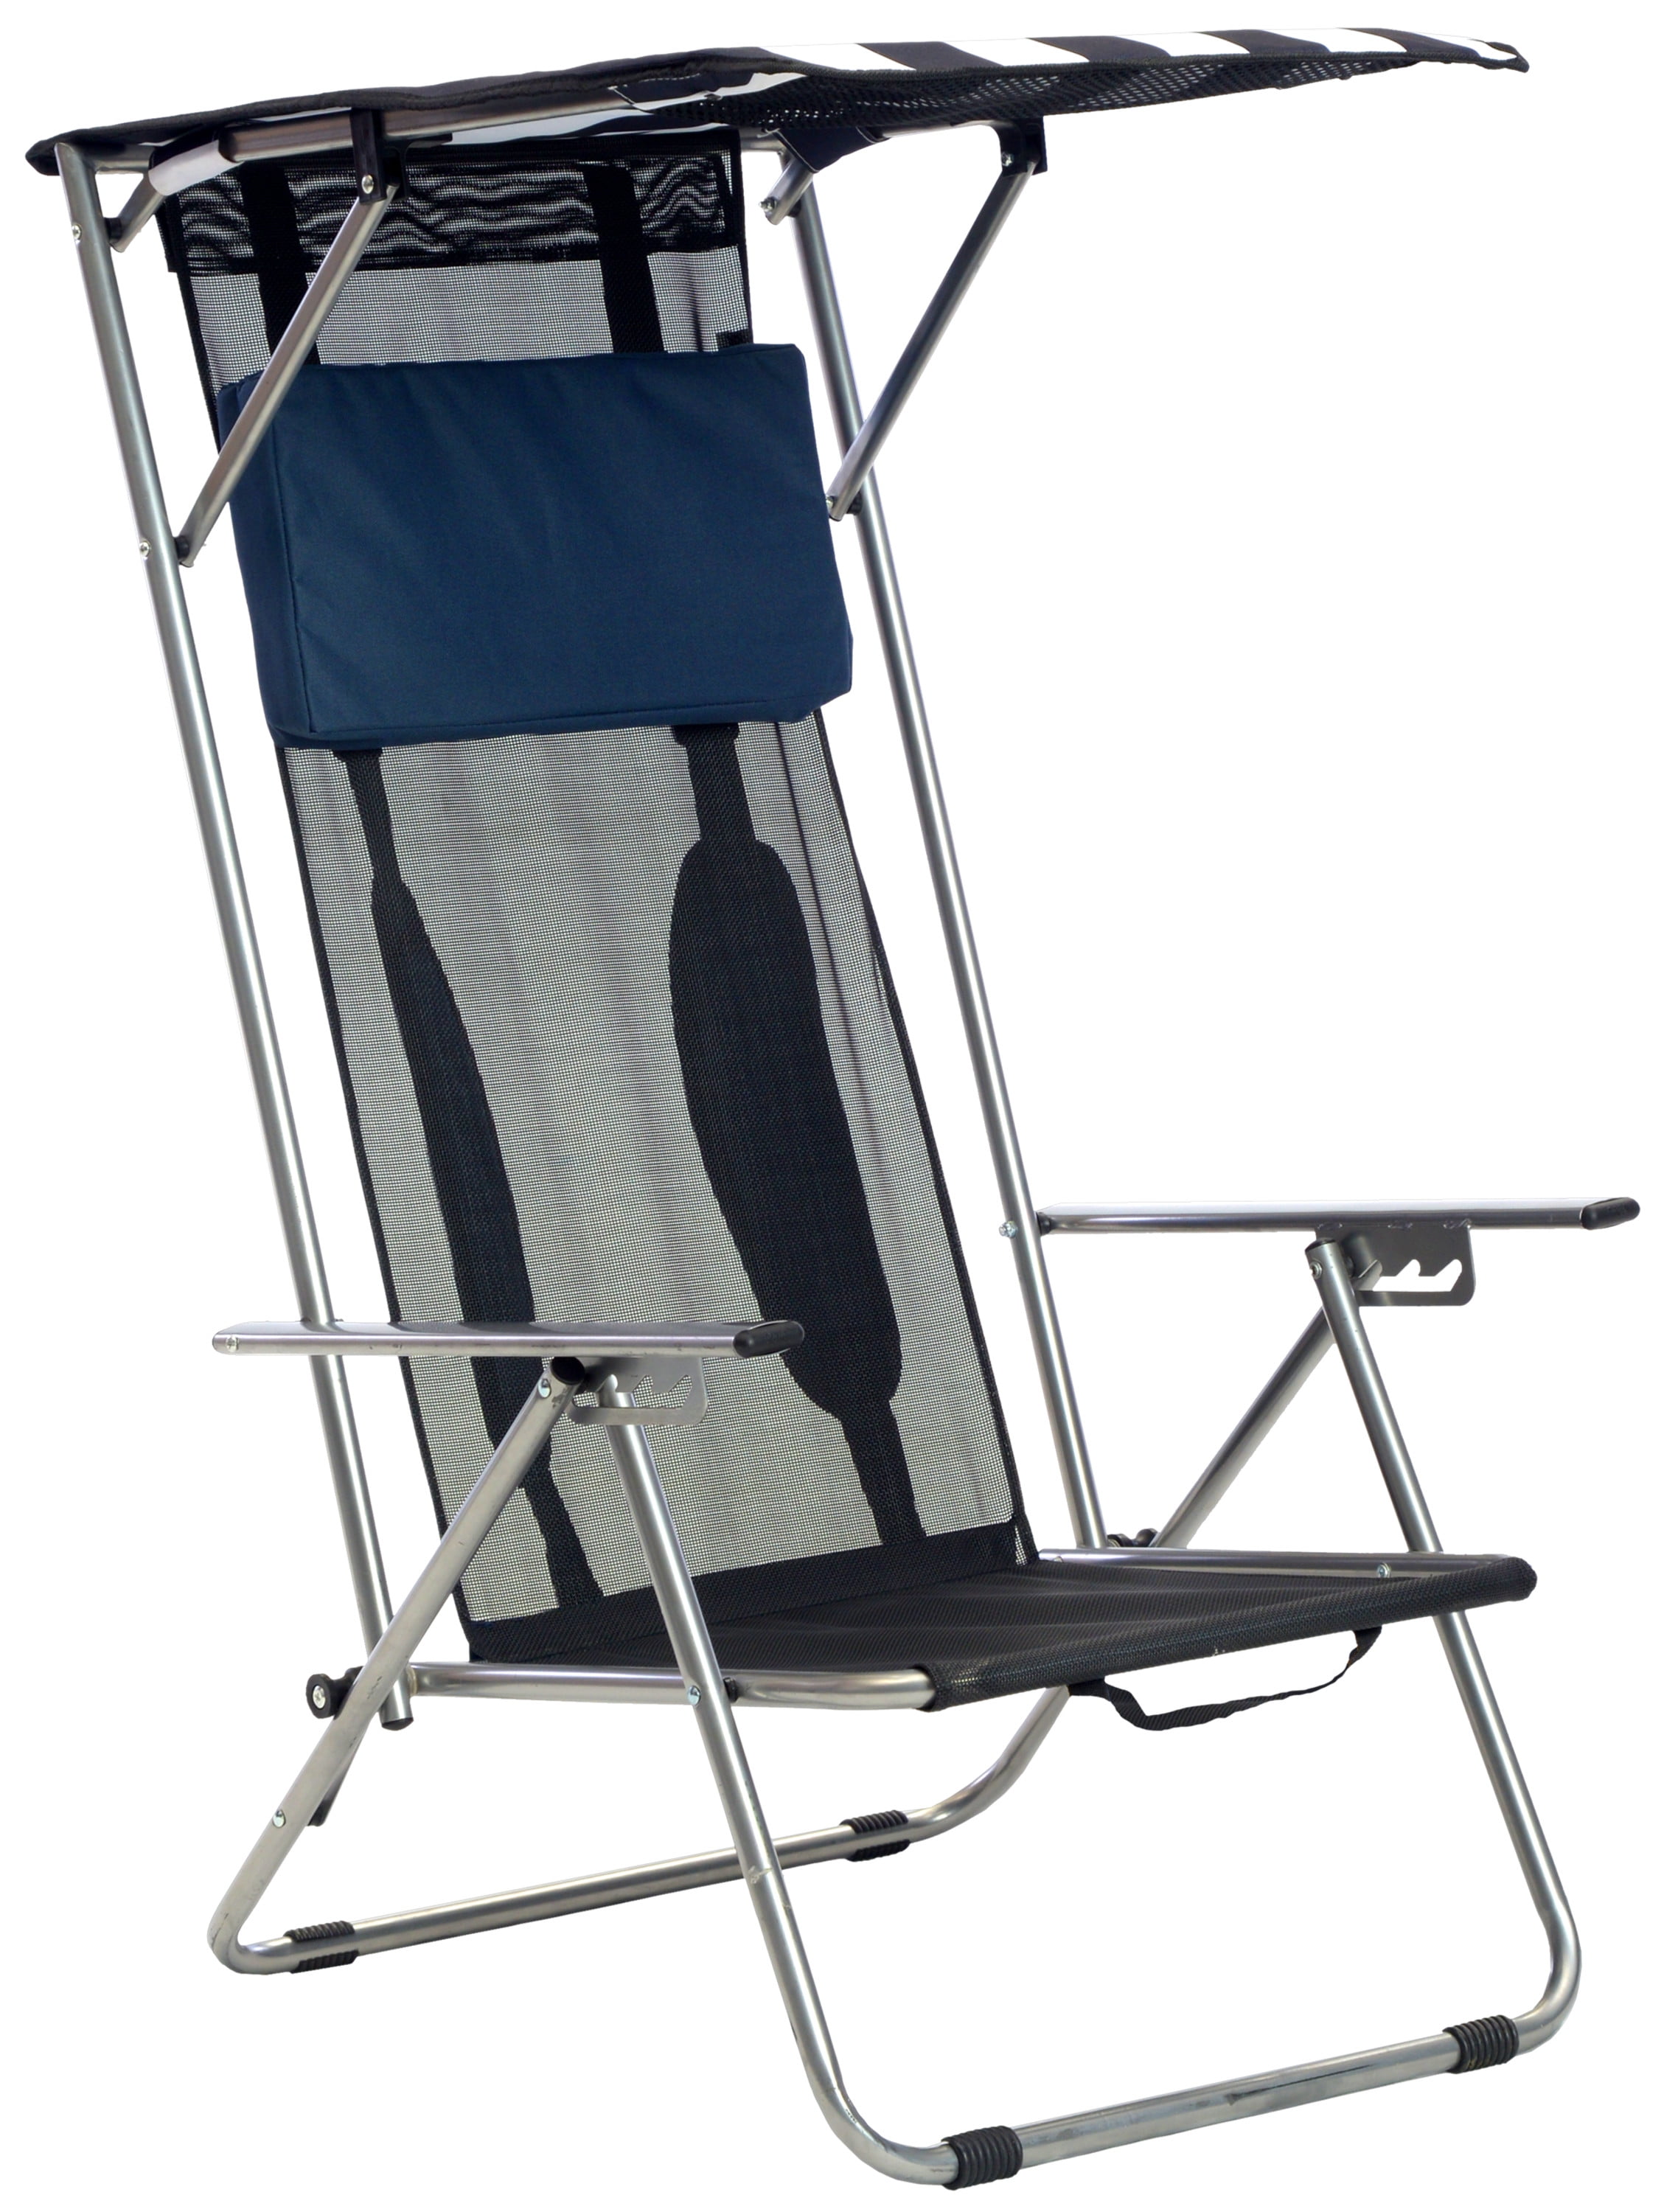 Wavy Marlin Beach Chair Canopy